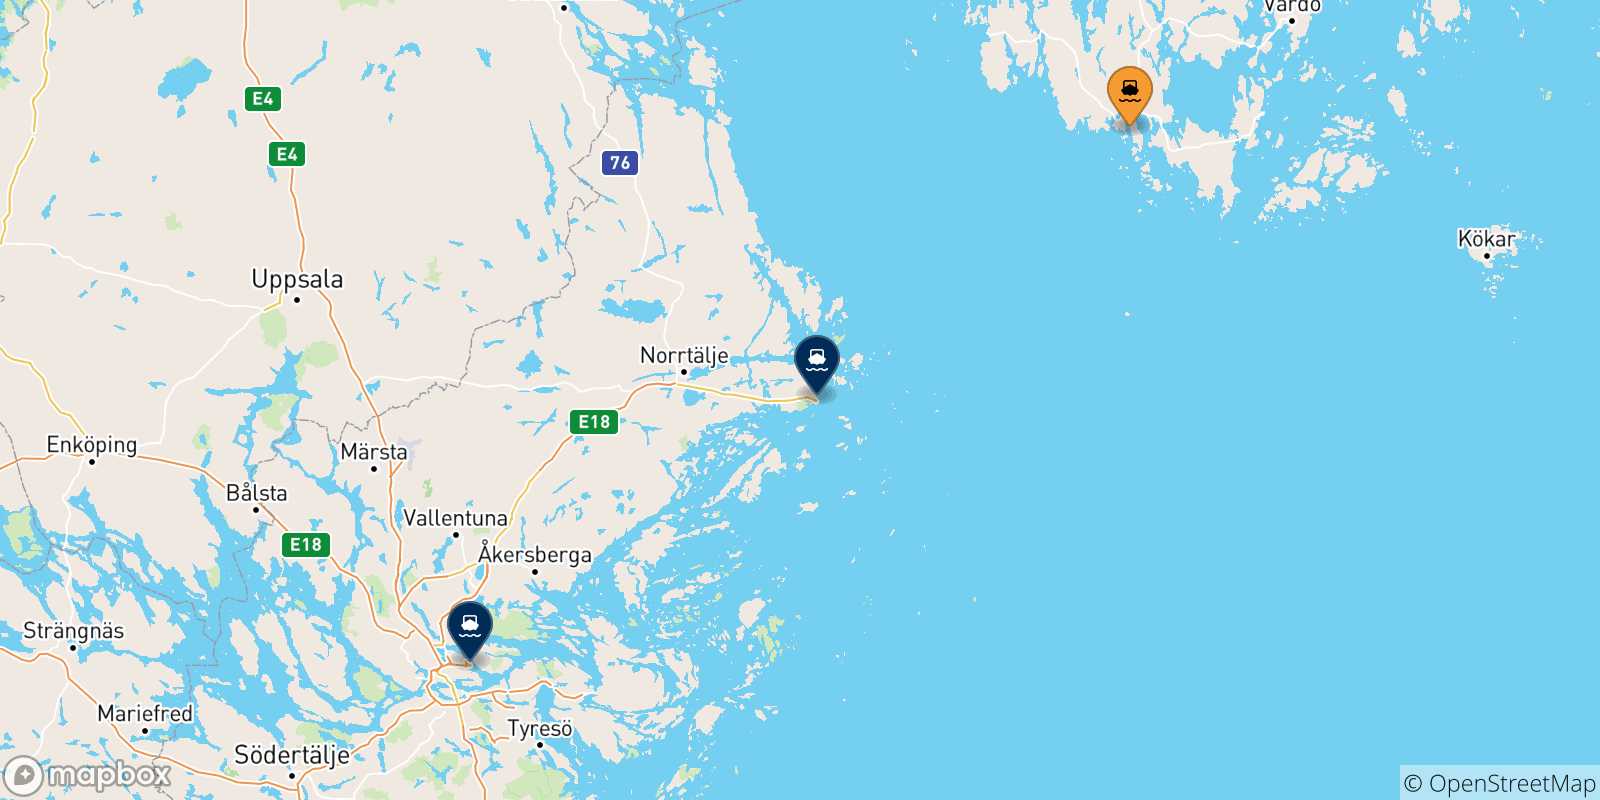 Mappa delle possibili rotte tra Mariehamn e la Svezia